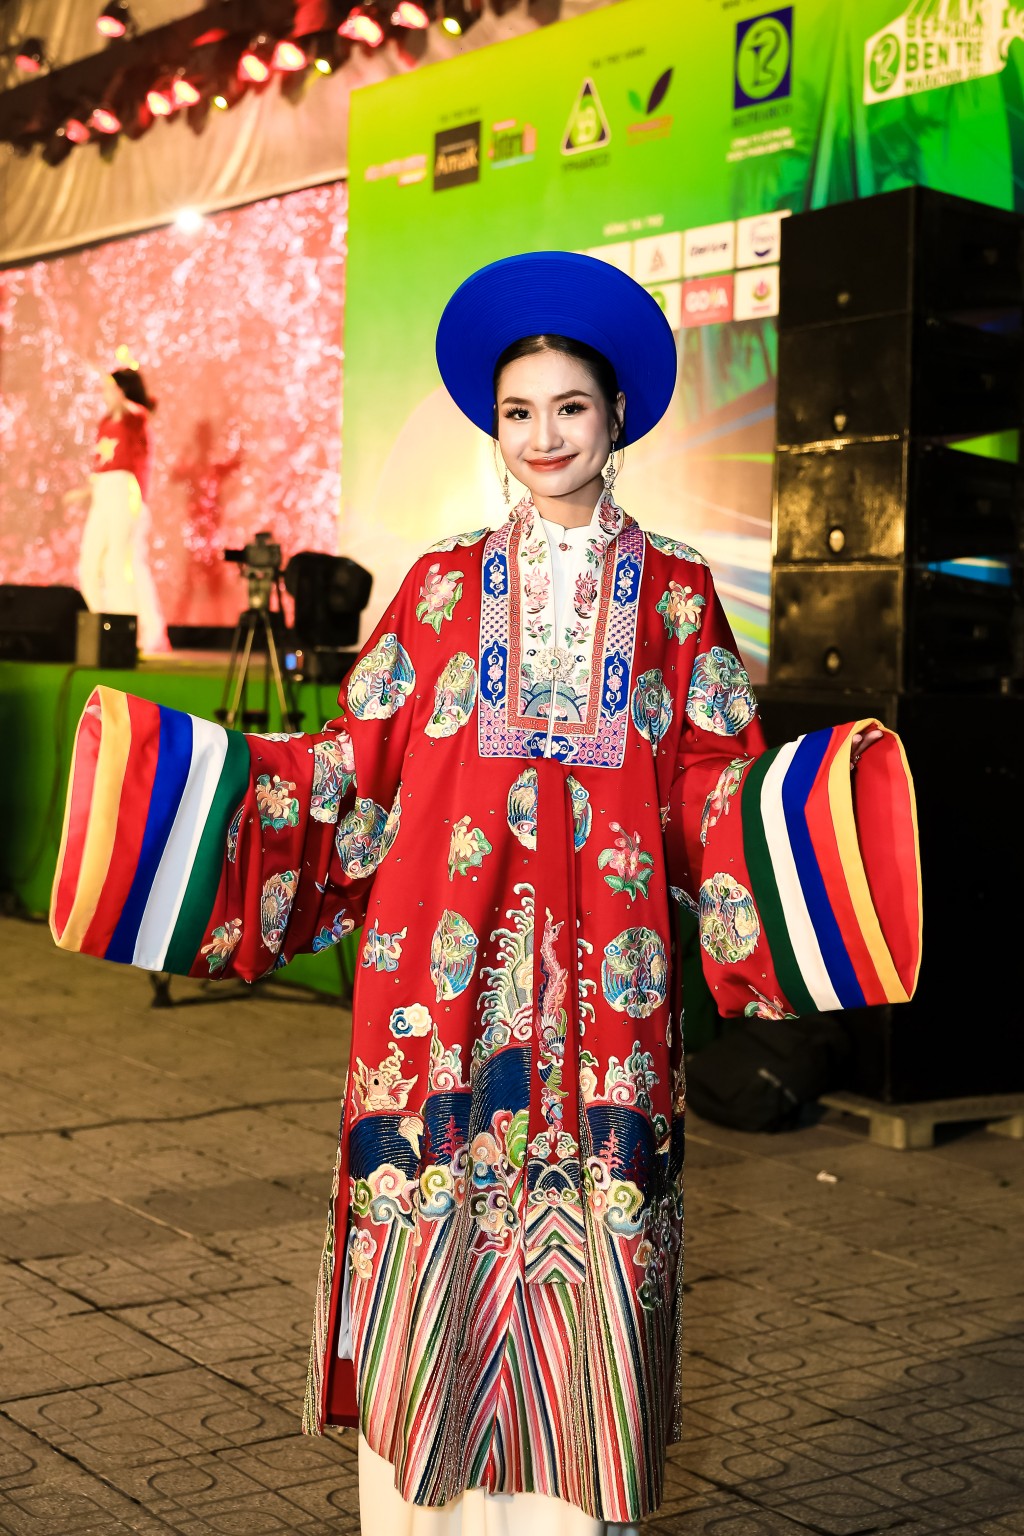 Hoa hậu Nguyễn Thanh Hà chia sẻ về màn catwalk đặc biệt